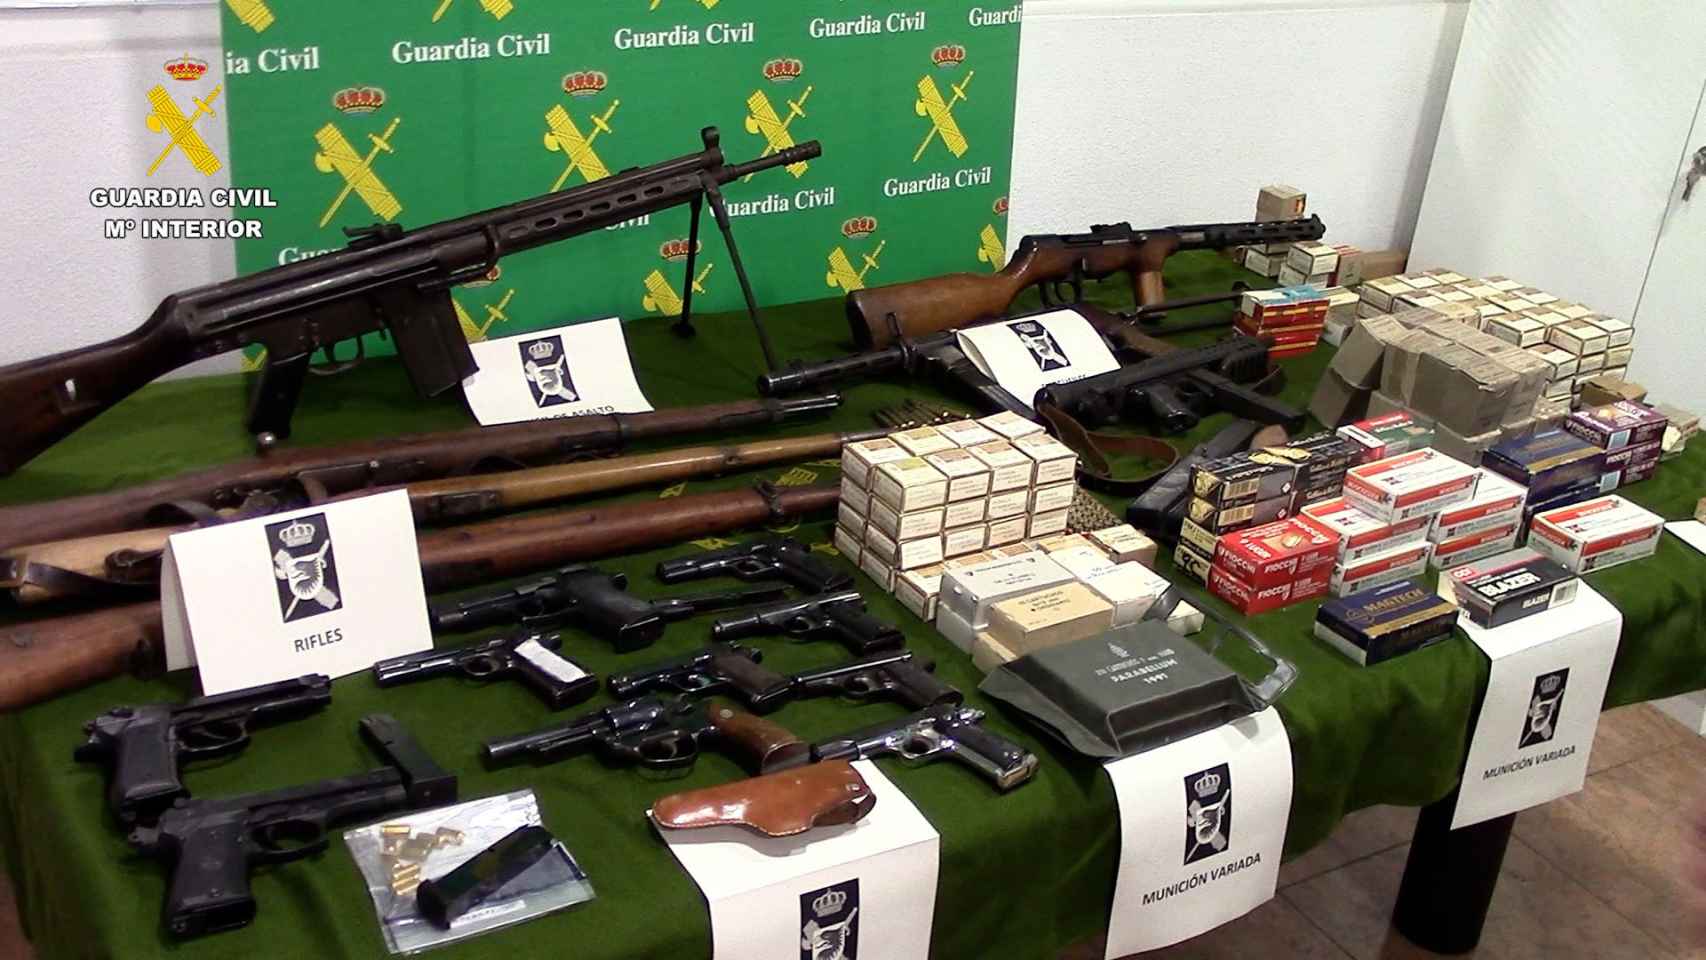 Las armas encontradas por la Guardia Civil / GUARDIA CIVIL